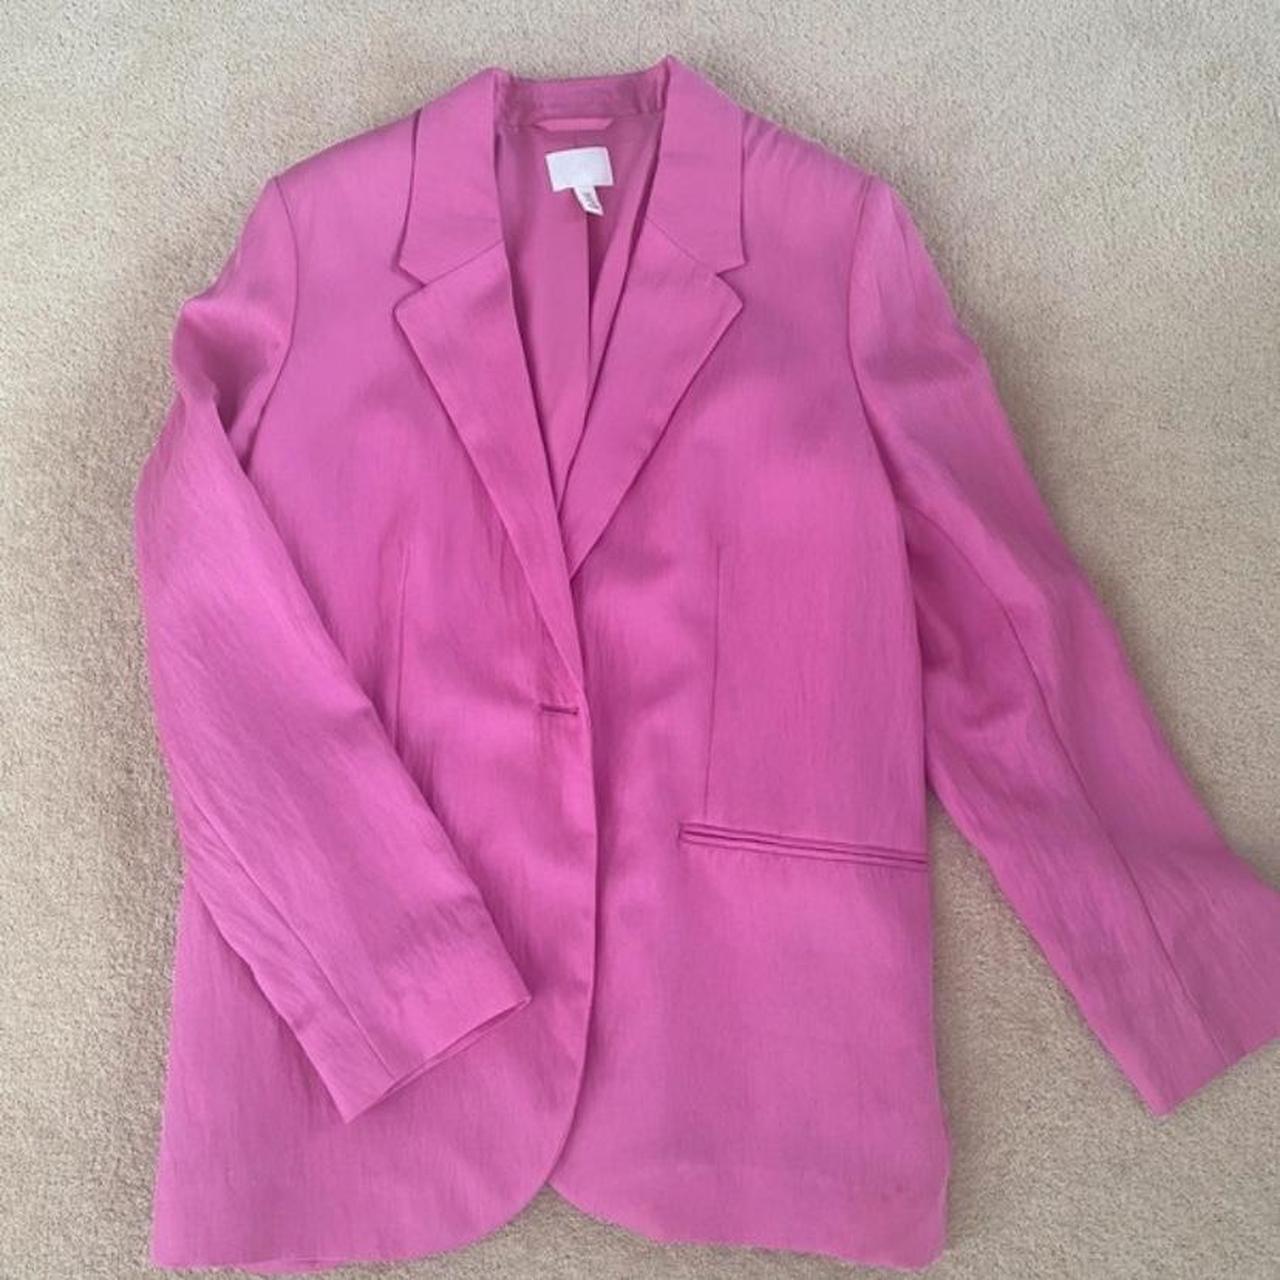 Suit blazer Size S Suit jacket Barbie color... - Depop